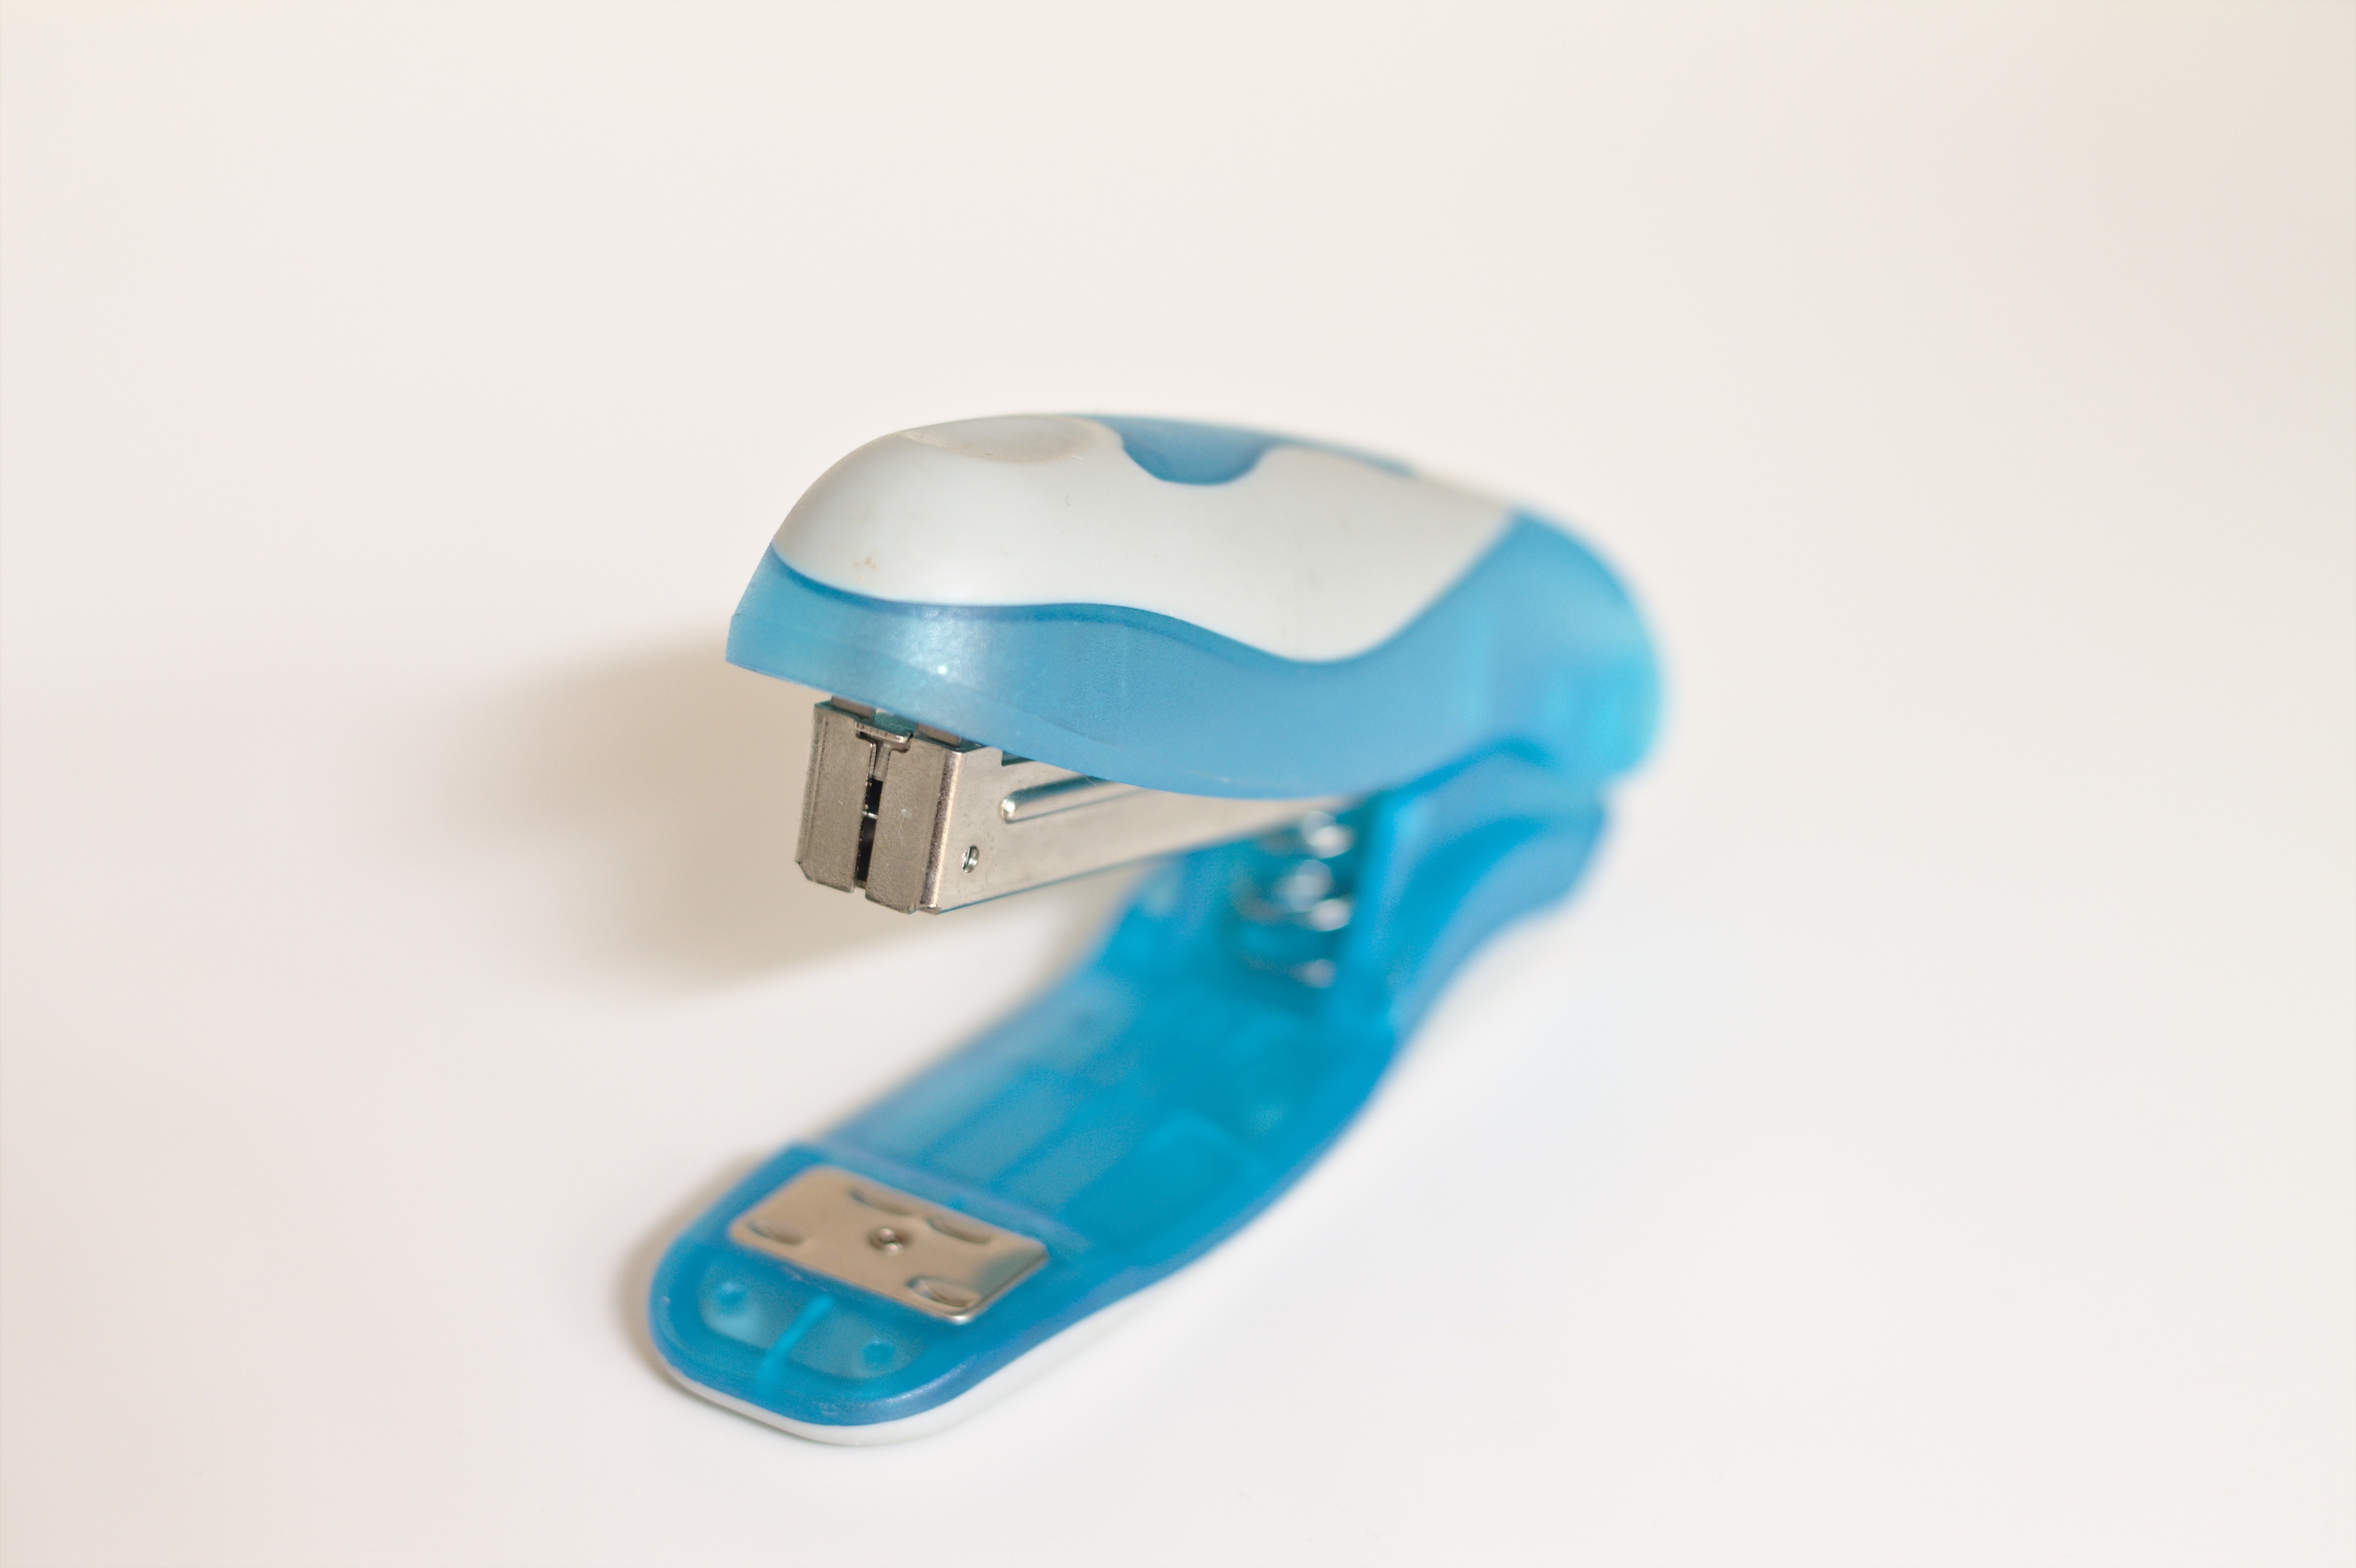 white and blue stapler